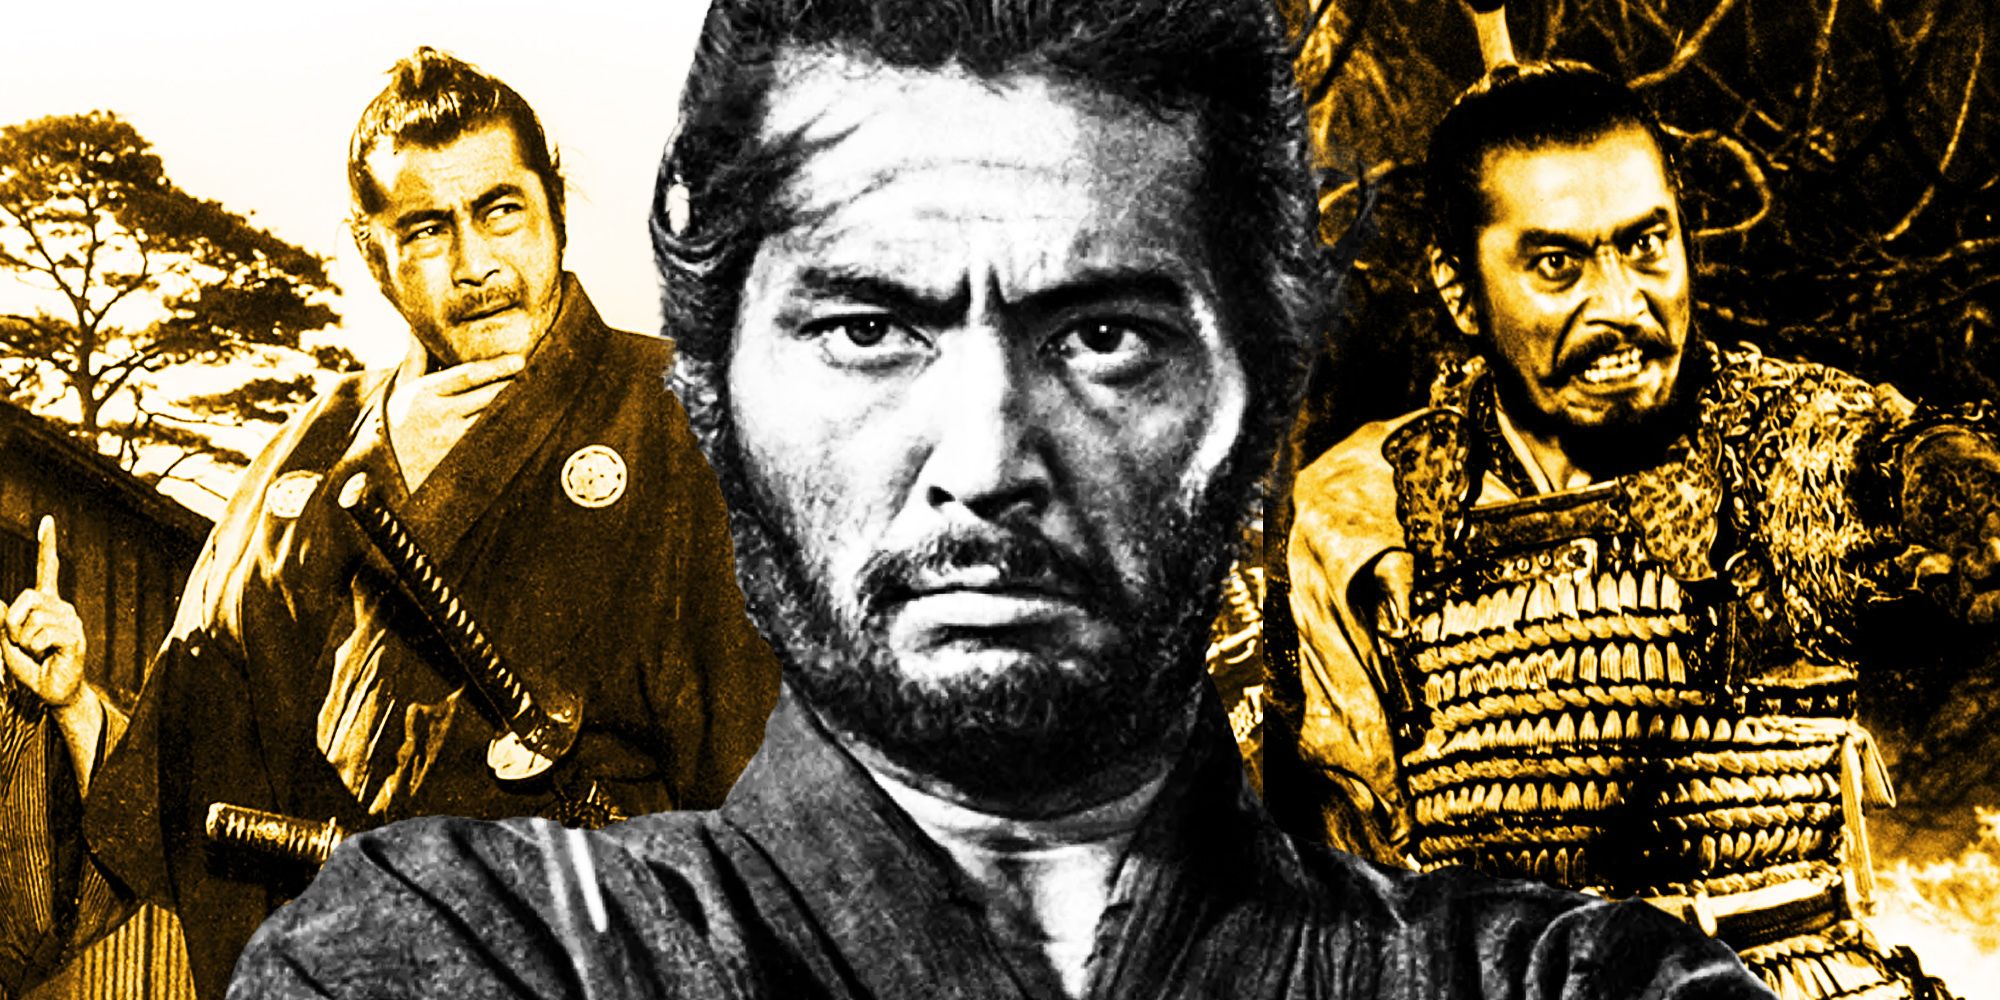 Every Akira Kurosawa Samurai Movie Ranked seven samurai yojimbo throne of blood